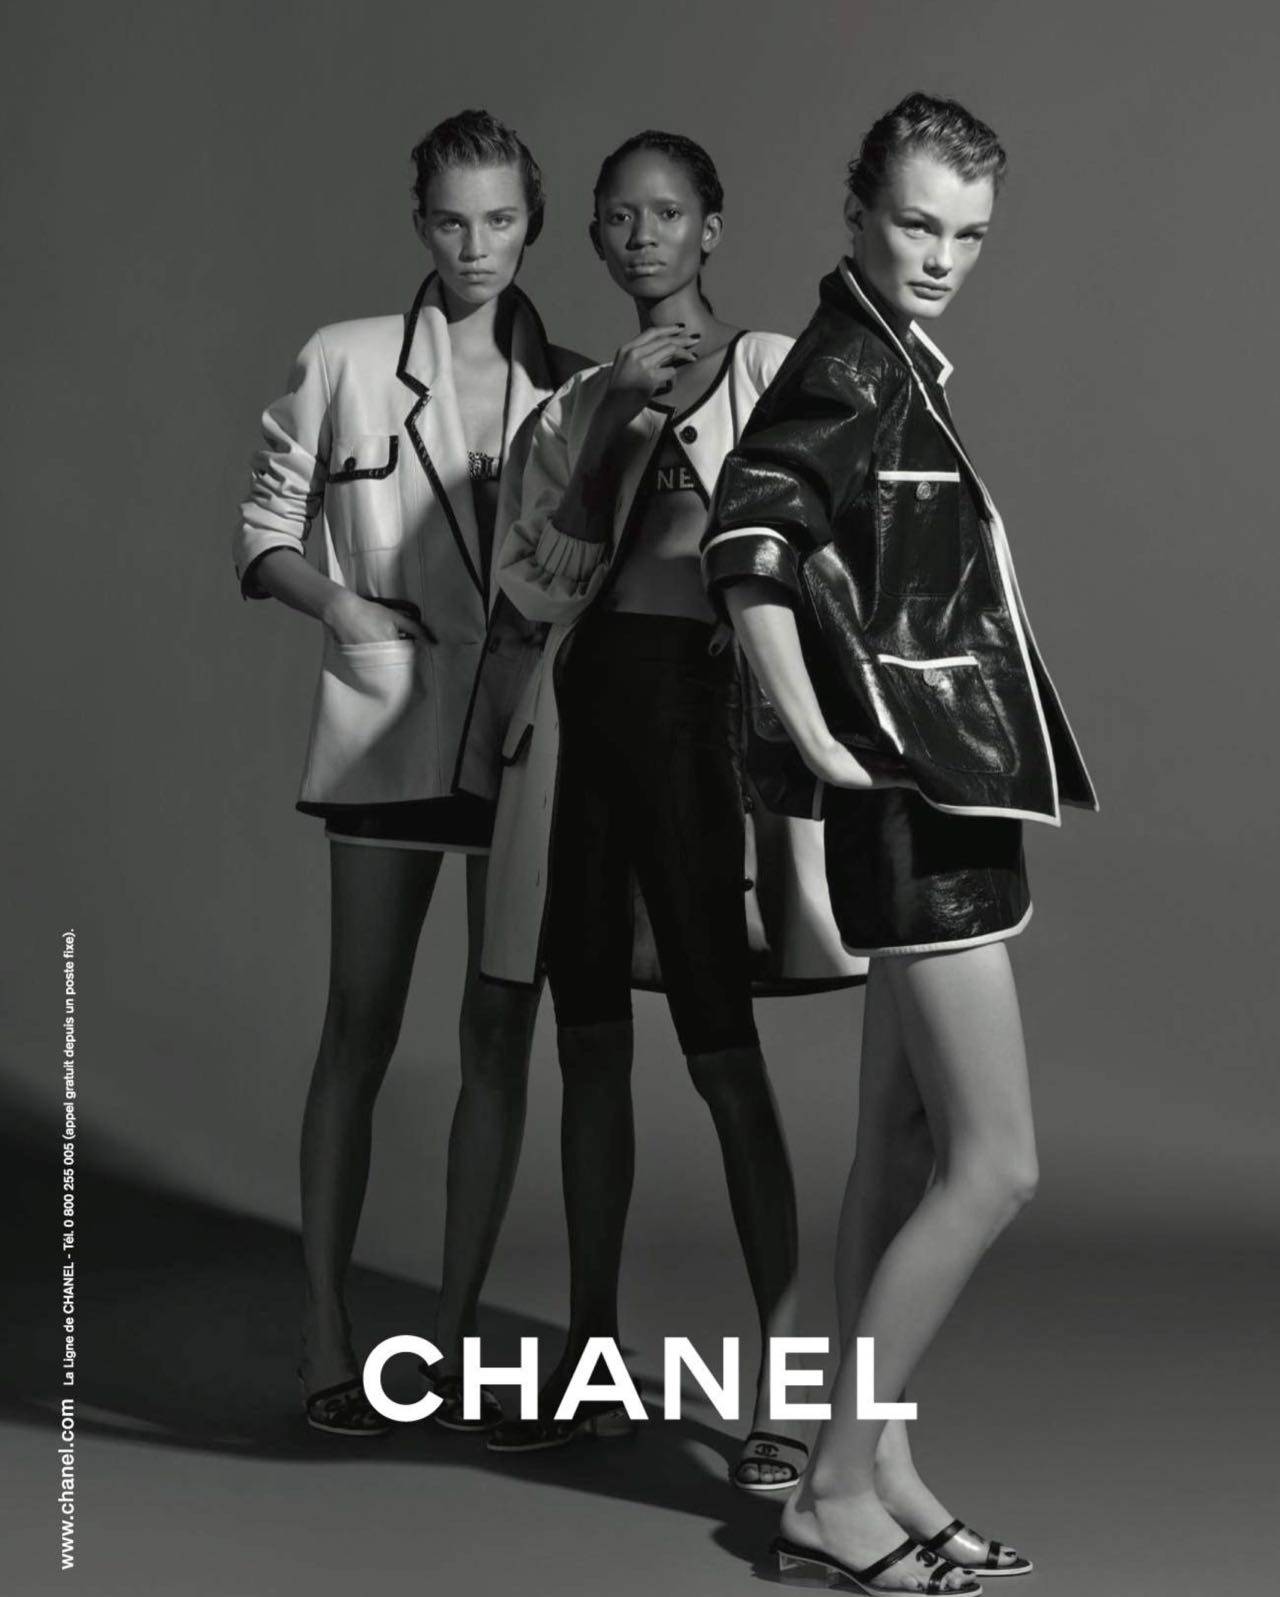 Chanel Spring 2019 Campaign - Karl Lagerfeld's Last Campaign | SENATUS